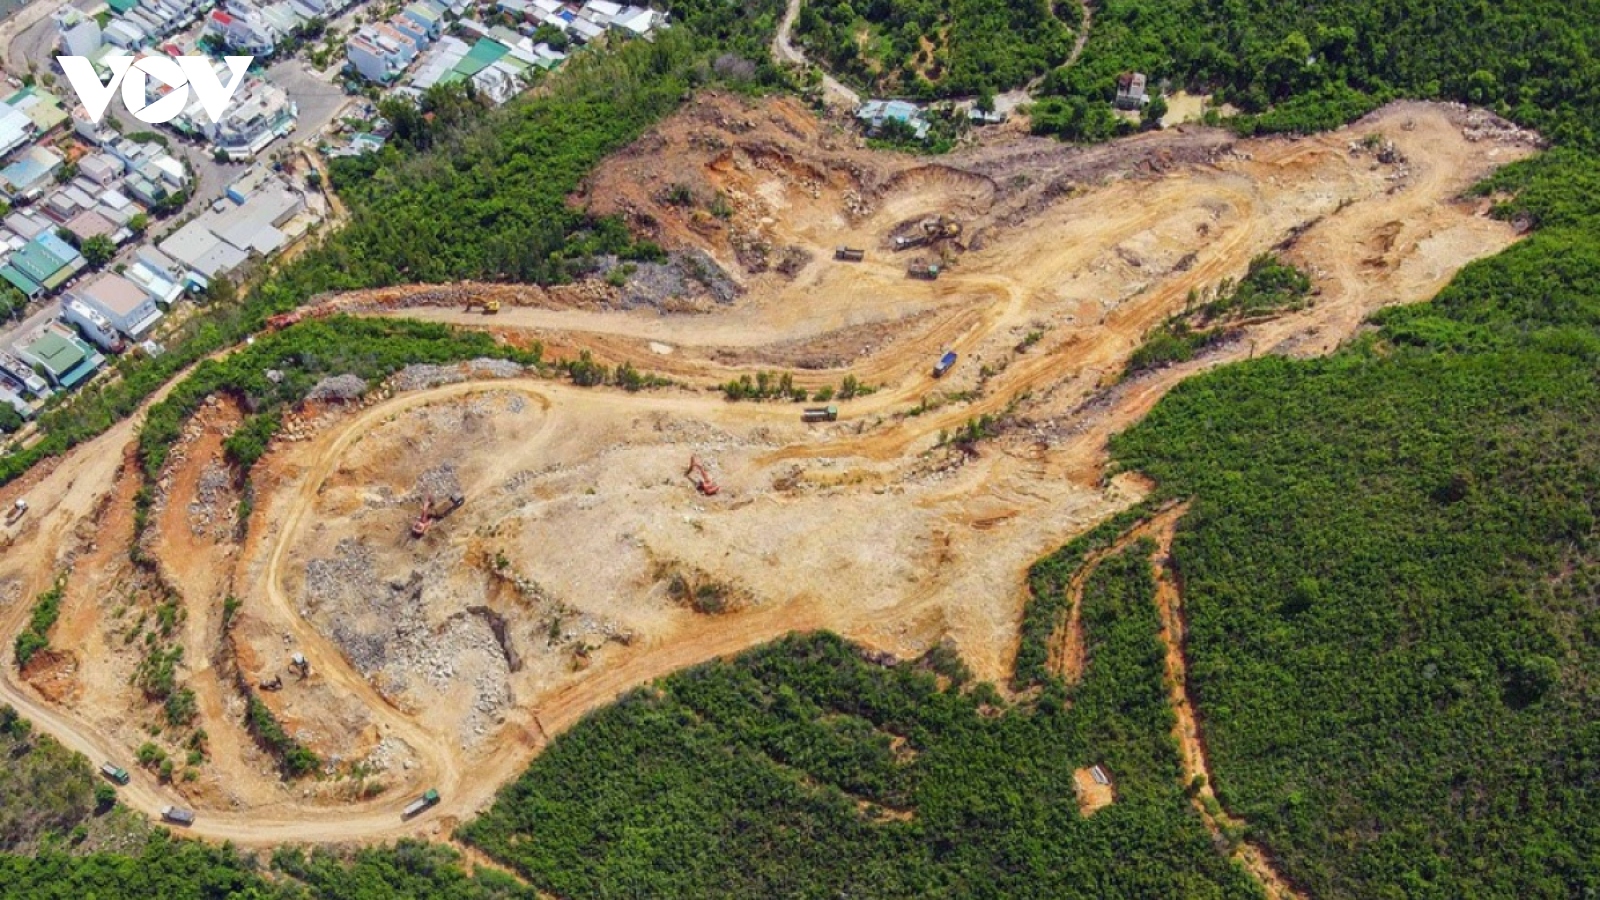 Khánh Hòa rà soát các dự án trên đồi núi ở thành phố Nha Trang